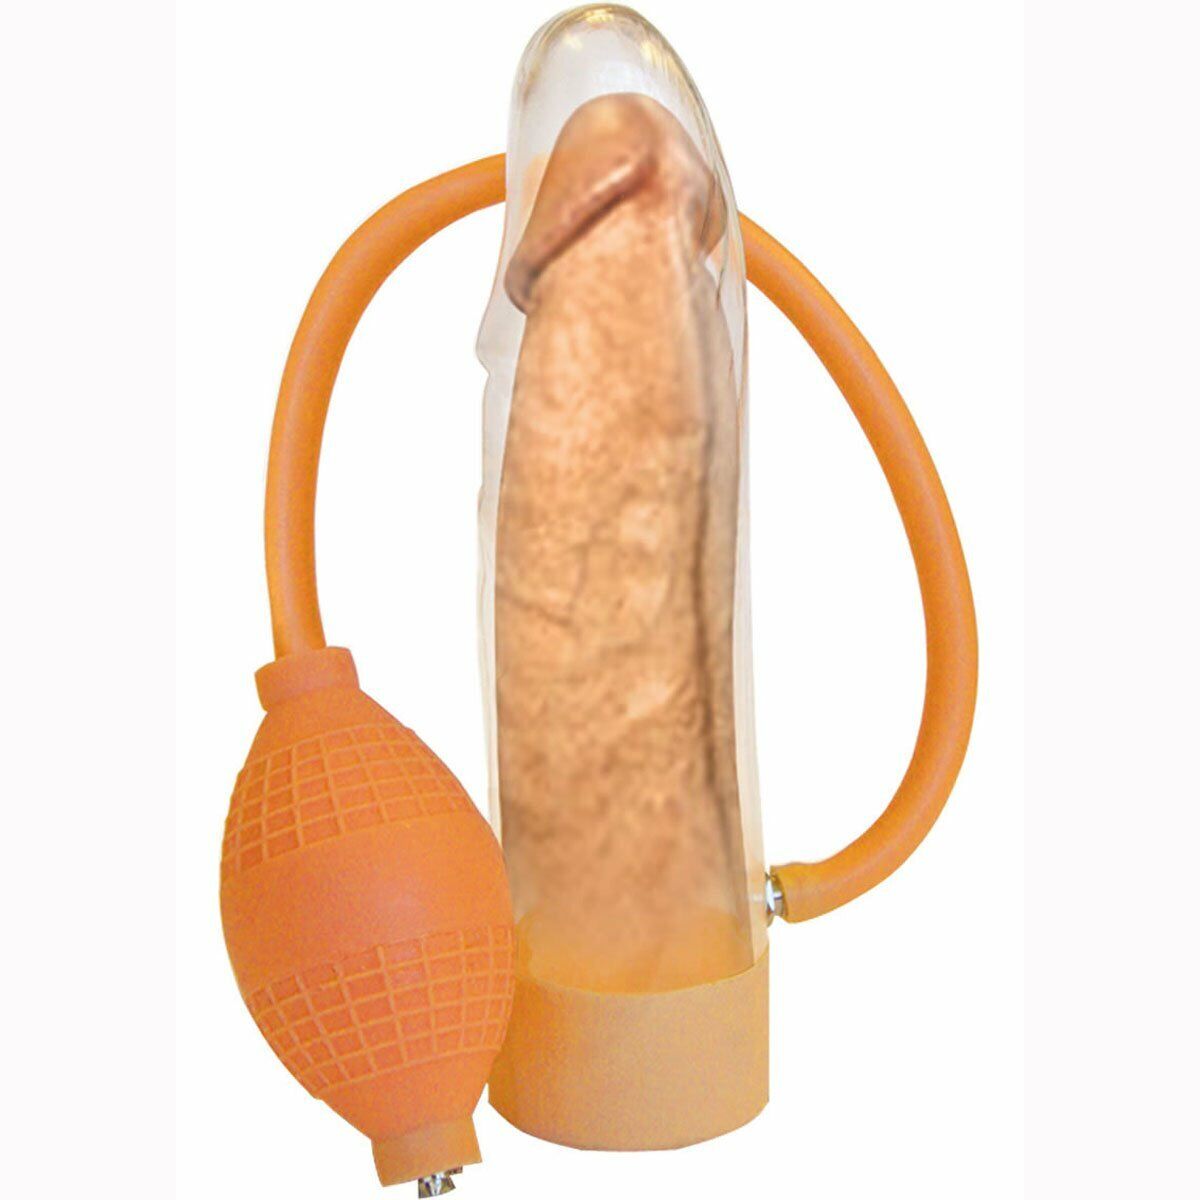 Clear Handi Penis Pump Male Erection Enhancer Cock Girth Enlarger Enlargement